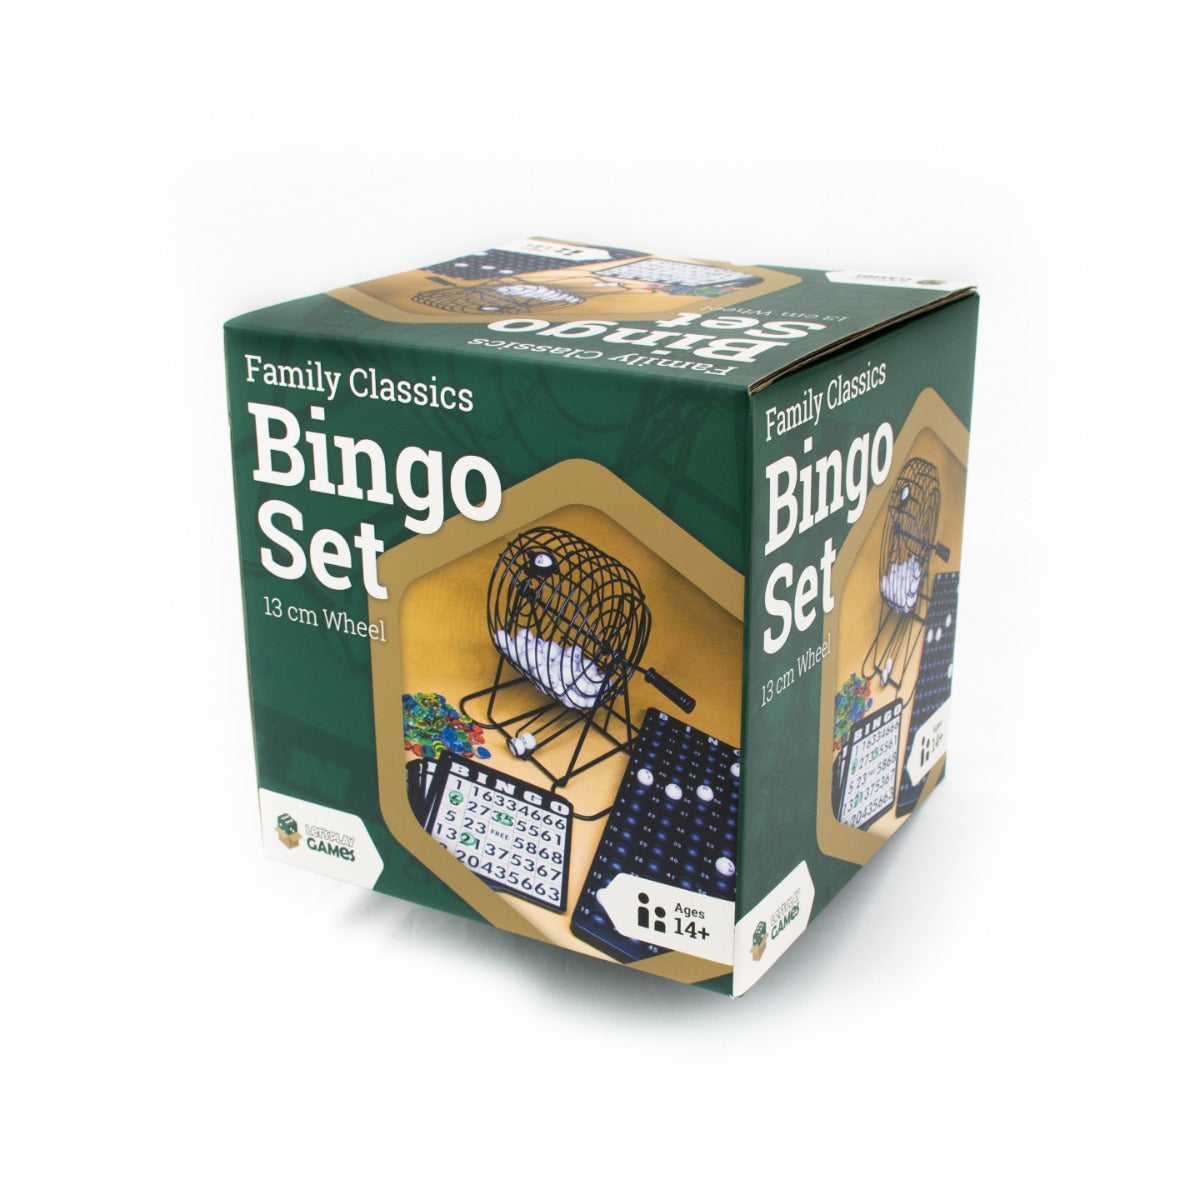 LPG Bingo Set - 13 cm Wheel